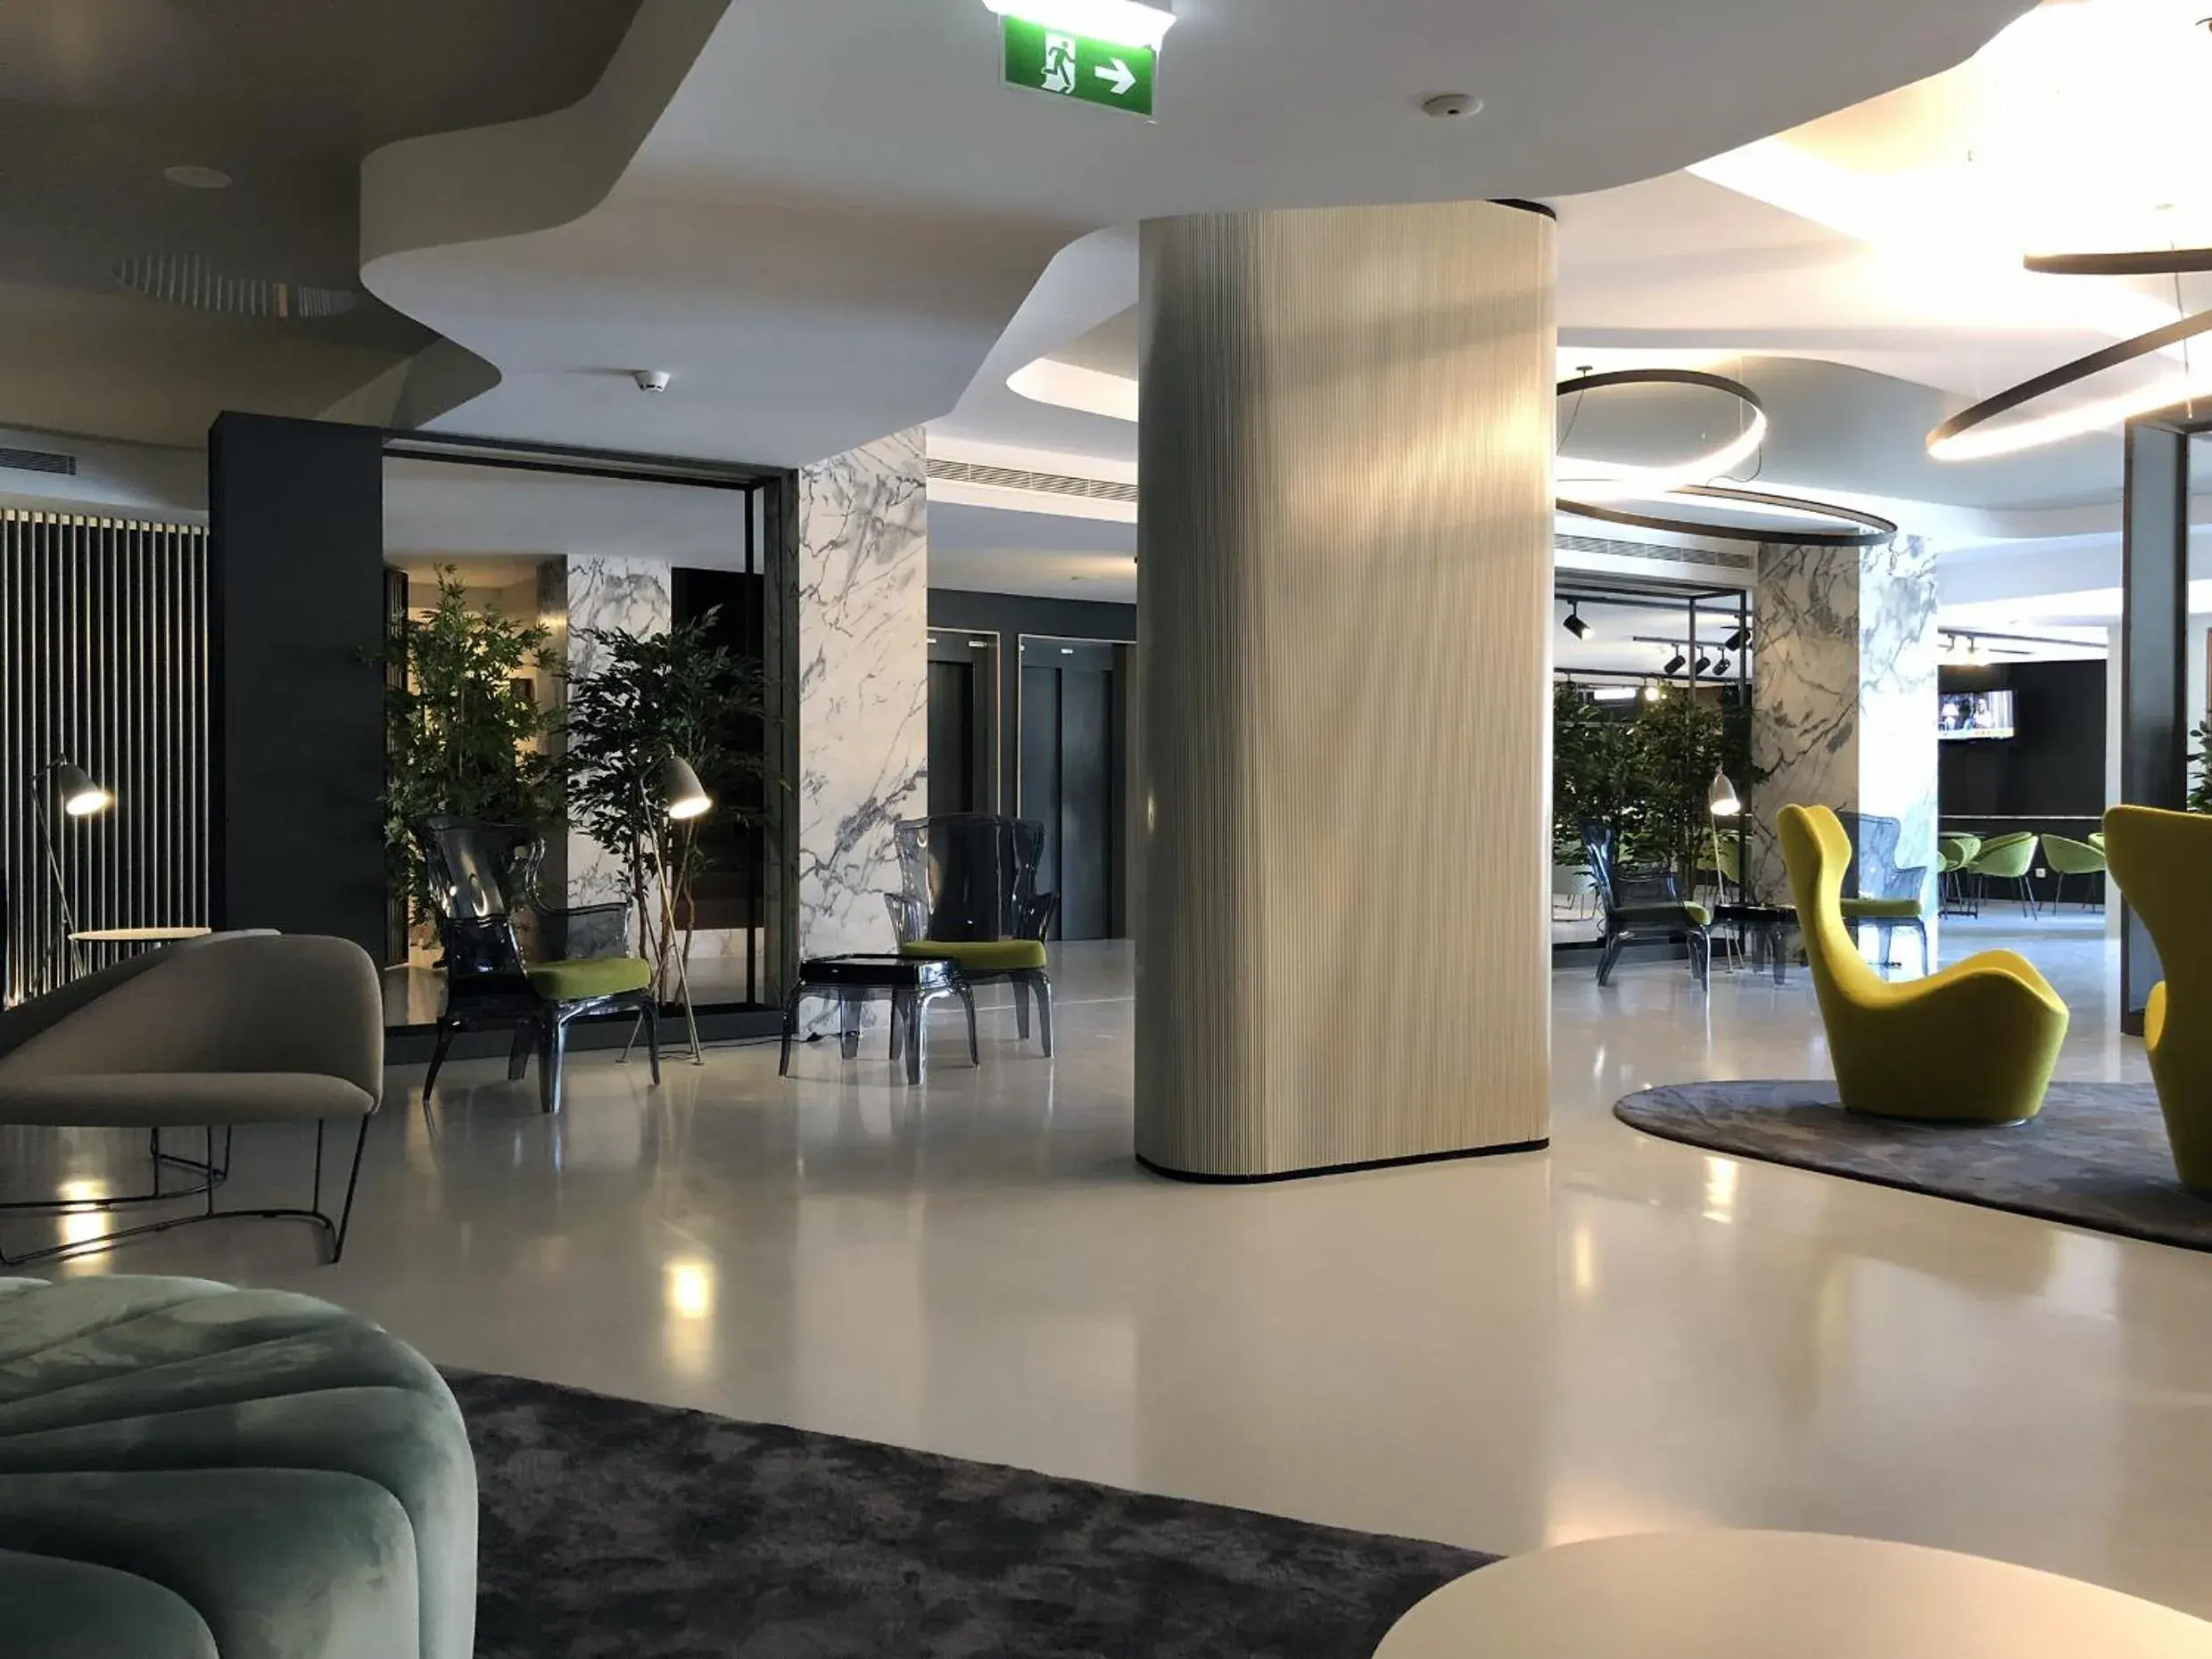 Lobby or reception, Lobby/Reception in Azoris Angra Garden – Plaza Hotel